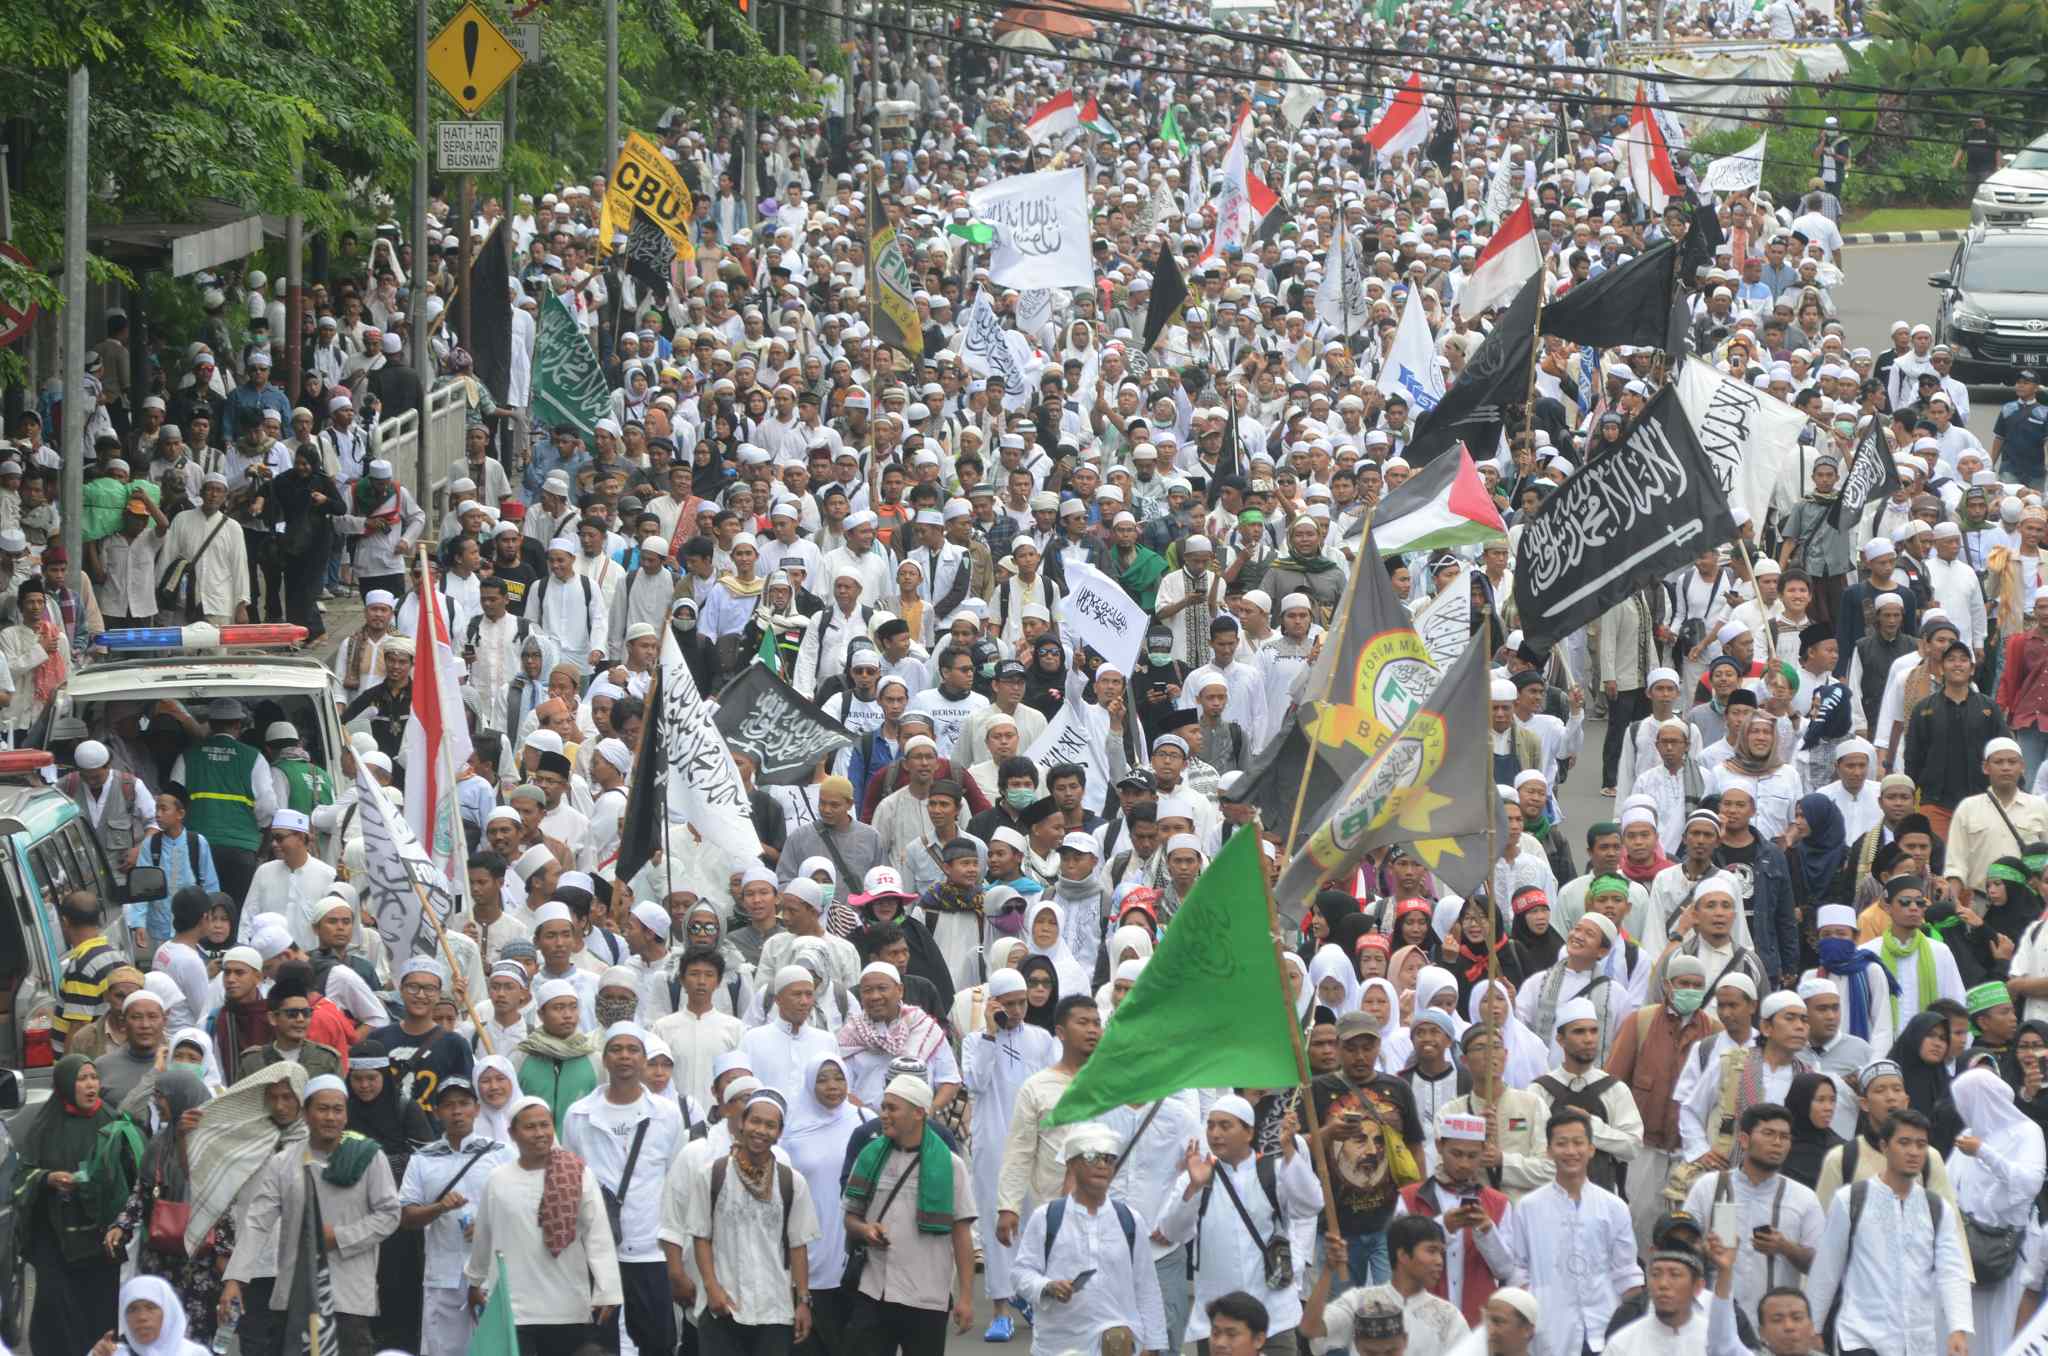 Umat muslim yang tergabung dalam Forum Umat Islam (FUI) melakukan long march menuju Istana di Jalan Medan Merdeka Timur, Jakarta, Jumat (31/3). Aksi ini menuntut kepada presiden Jokowi untuk mecabut jabatan Basuki Tjahaja Purnama atau Ahok dari posisinya sebagai Gubernur DKI Jakarta. AKTUAL/Tino Oktaviano